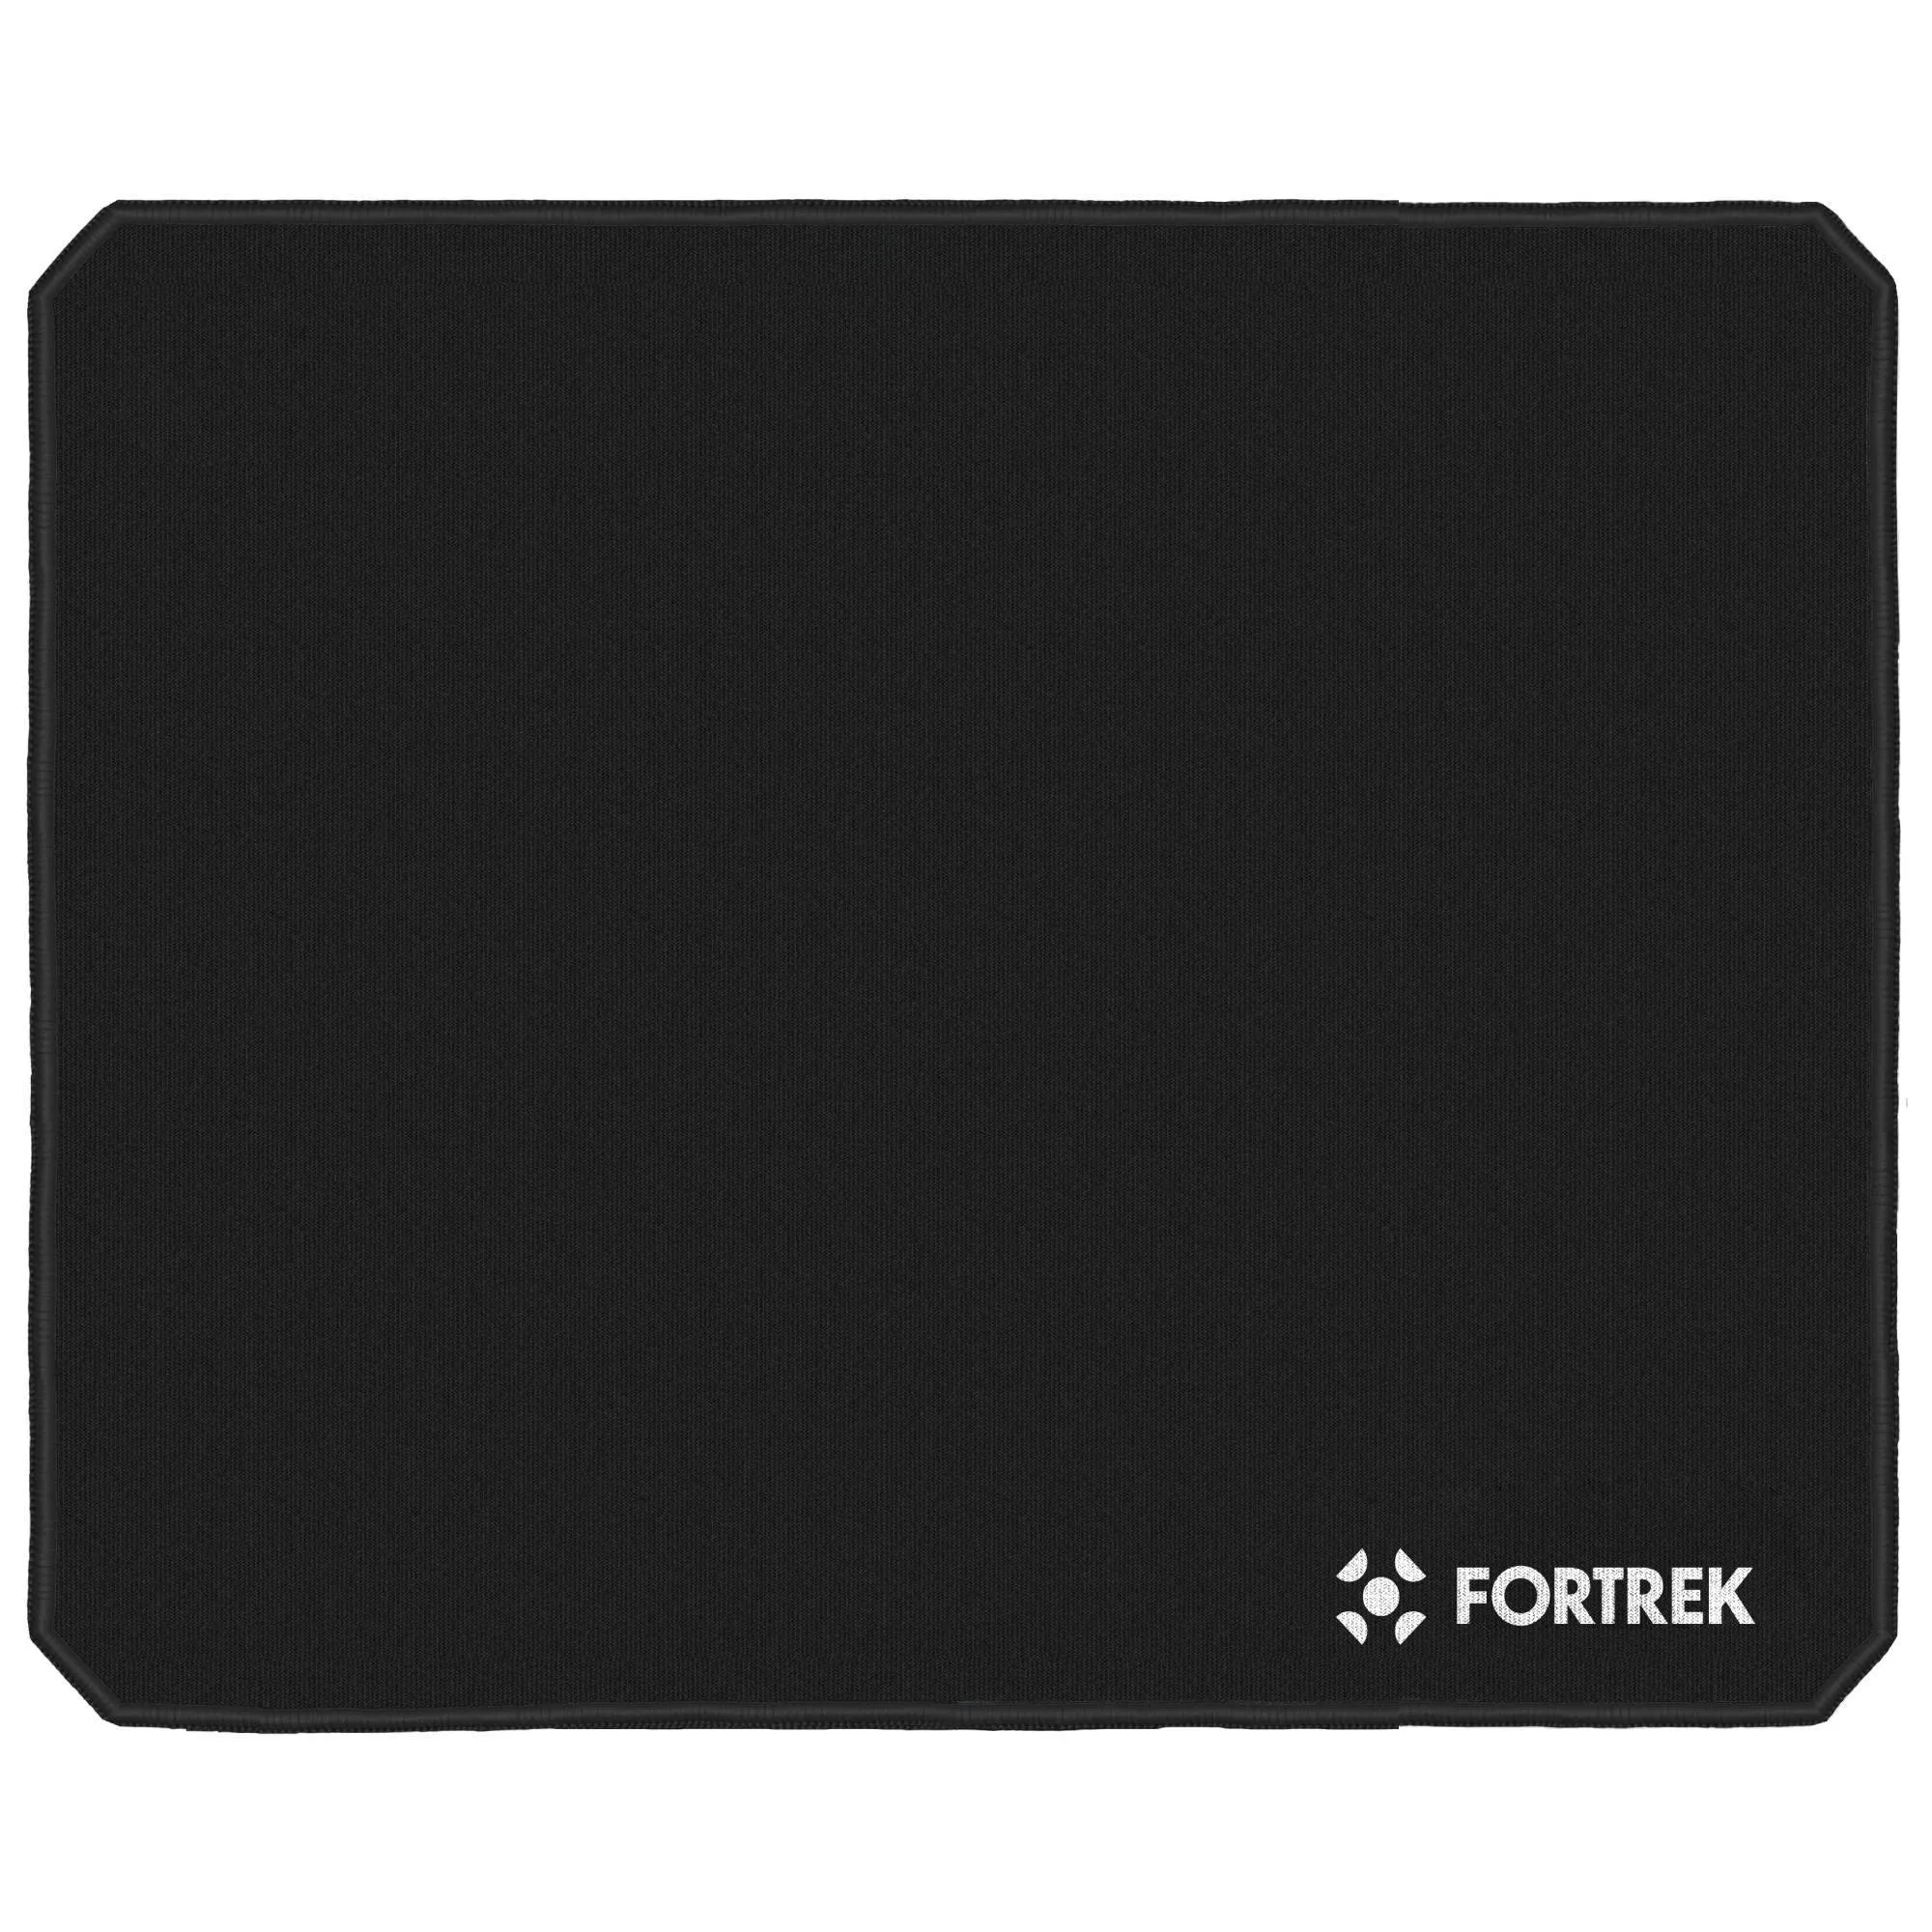 Mouse Pad Gamer Fortrek Speed MPG101 (320x240) Preto por 0,00 à vista no boleto/pix ou parcele em até 1x sem juros. Compre na loja Fortrek!